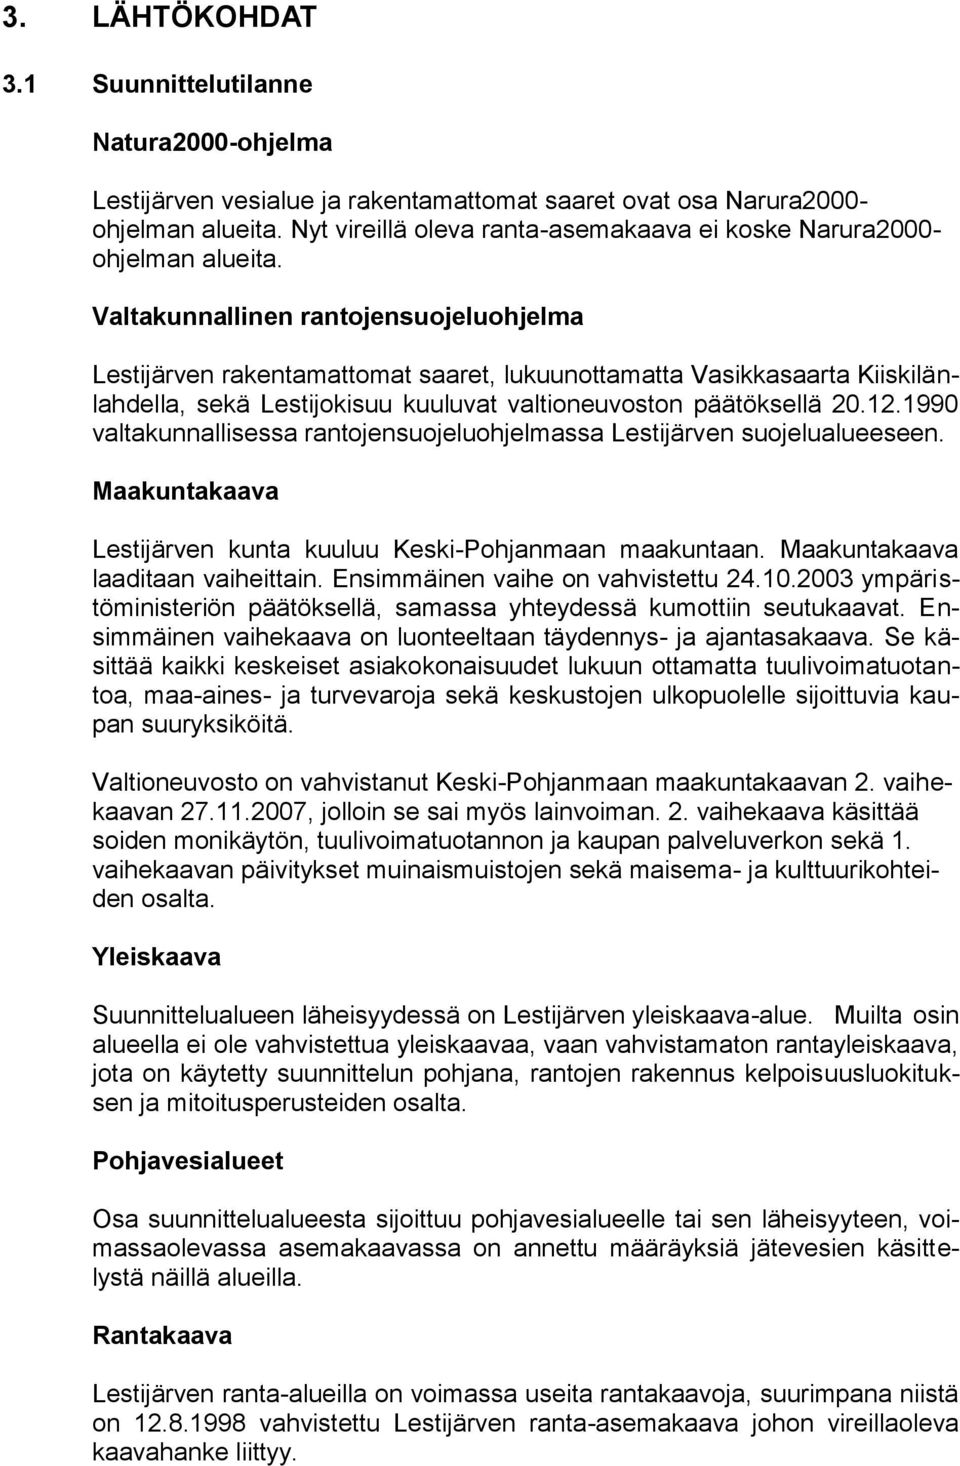 Valtakunnallinen rantojensuojeluohjelma Lestijärven rakentamattomat saaret, lukuunottamatta Vasikkasaarta Kiiskilänlahdella, sekä Lestijokisuu kuuluvat valtioneuvoston päätöksellä 20.12.